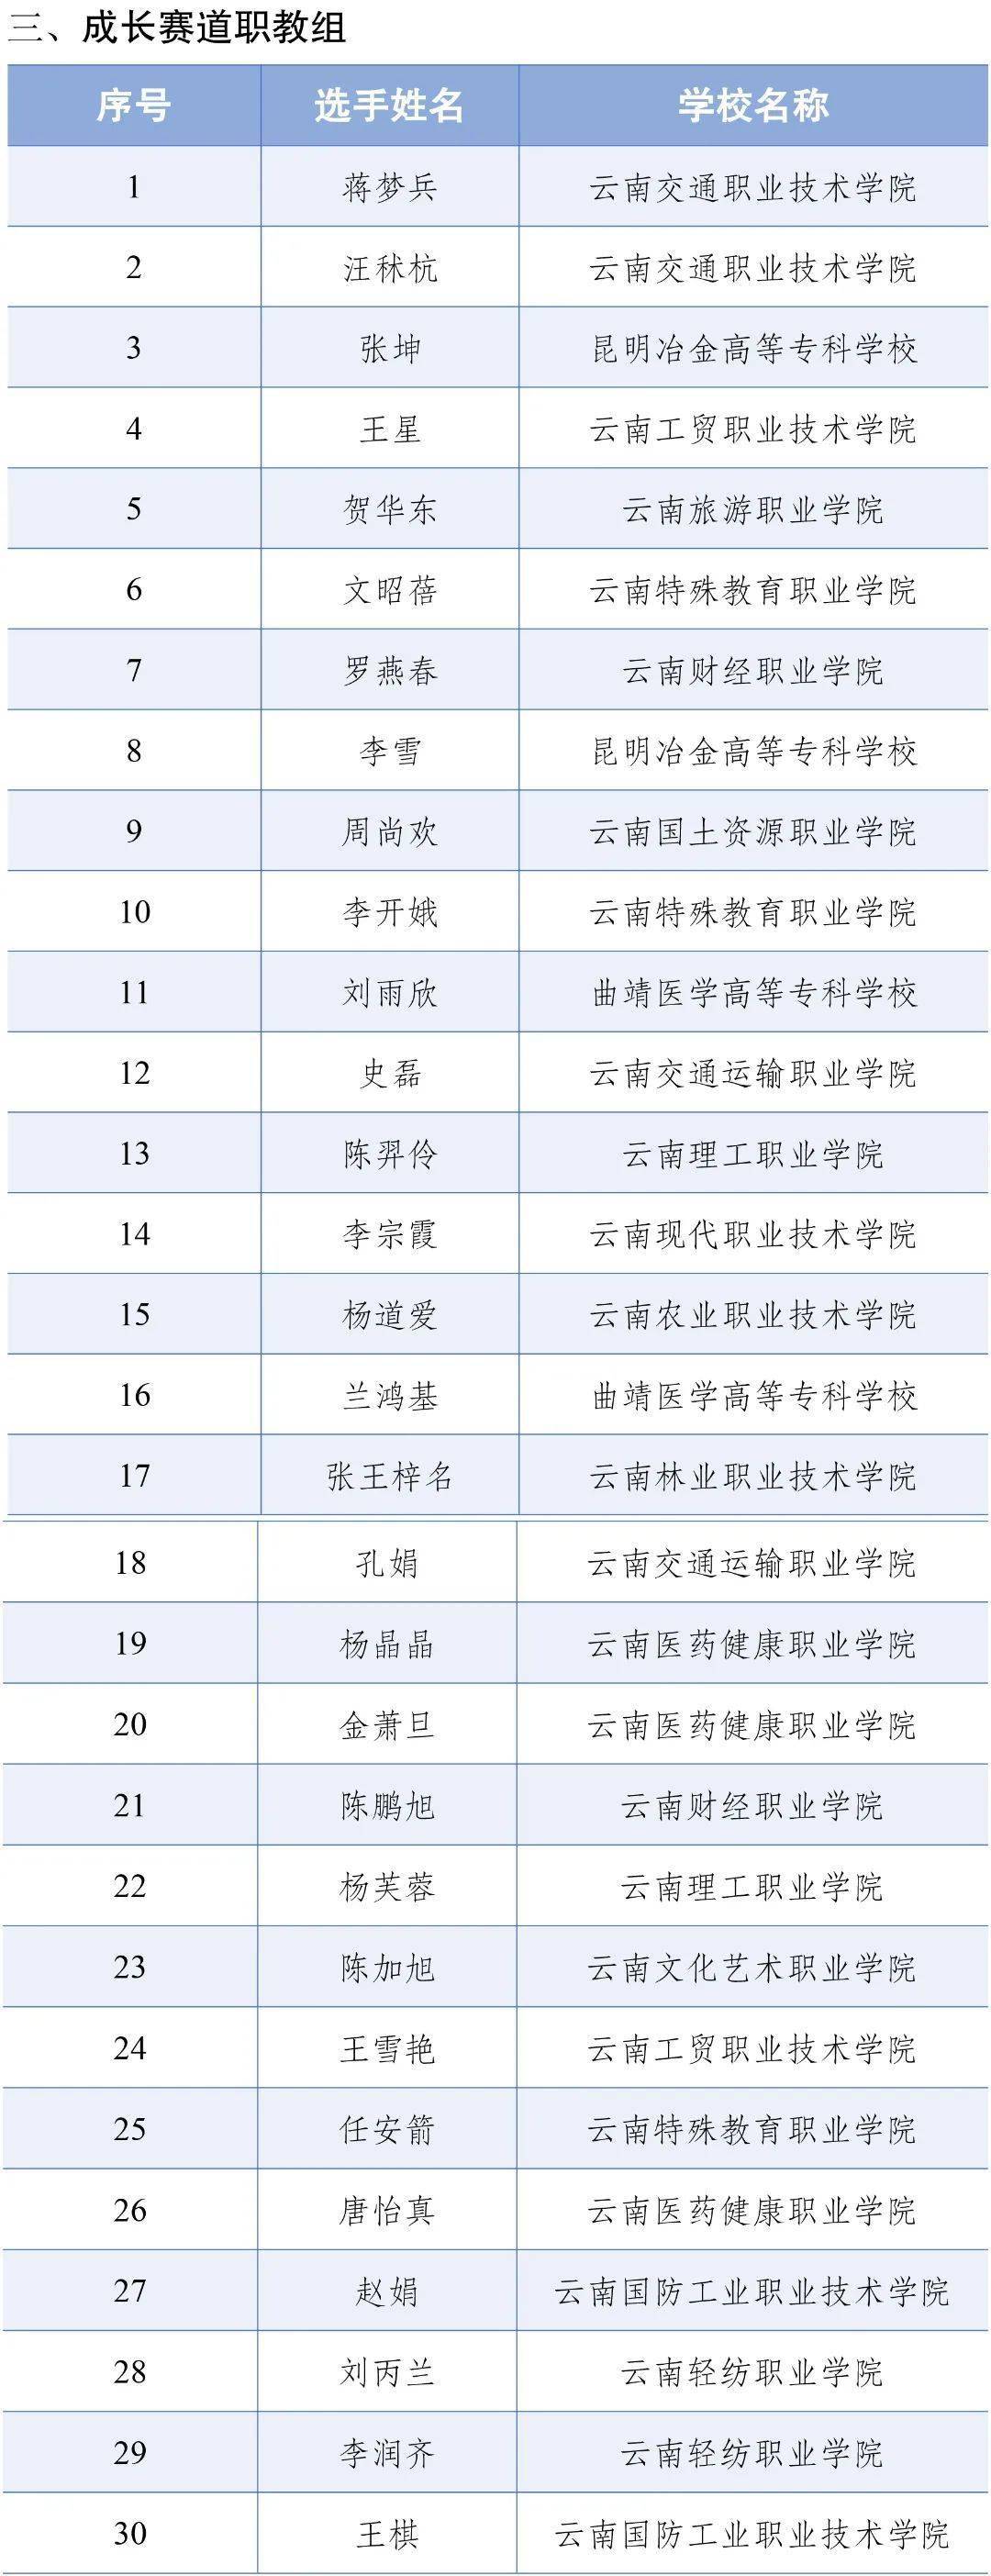 云南省教育厅公示一项决赛名单